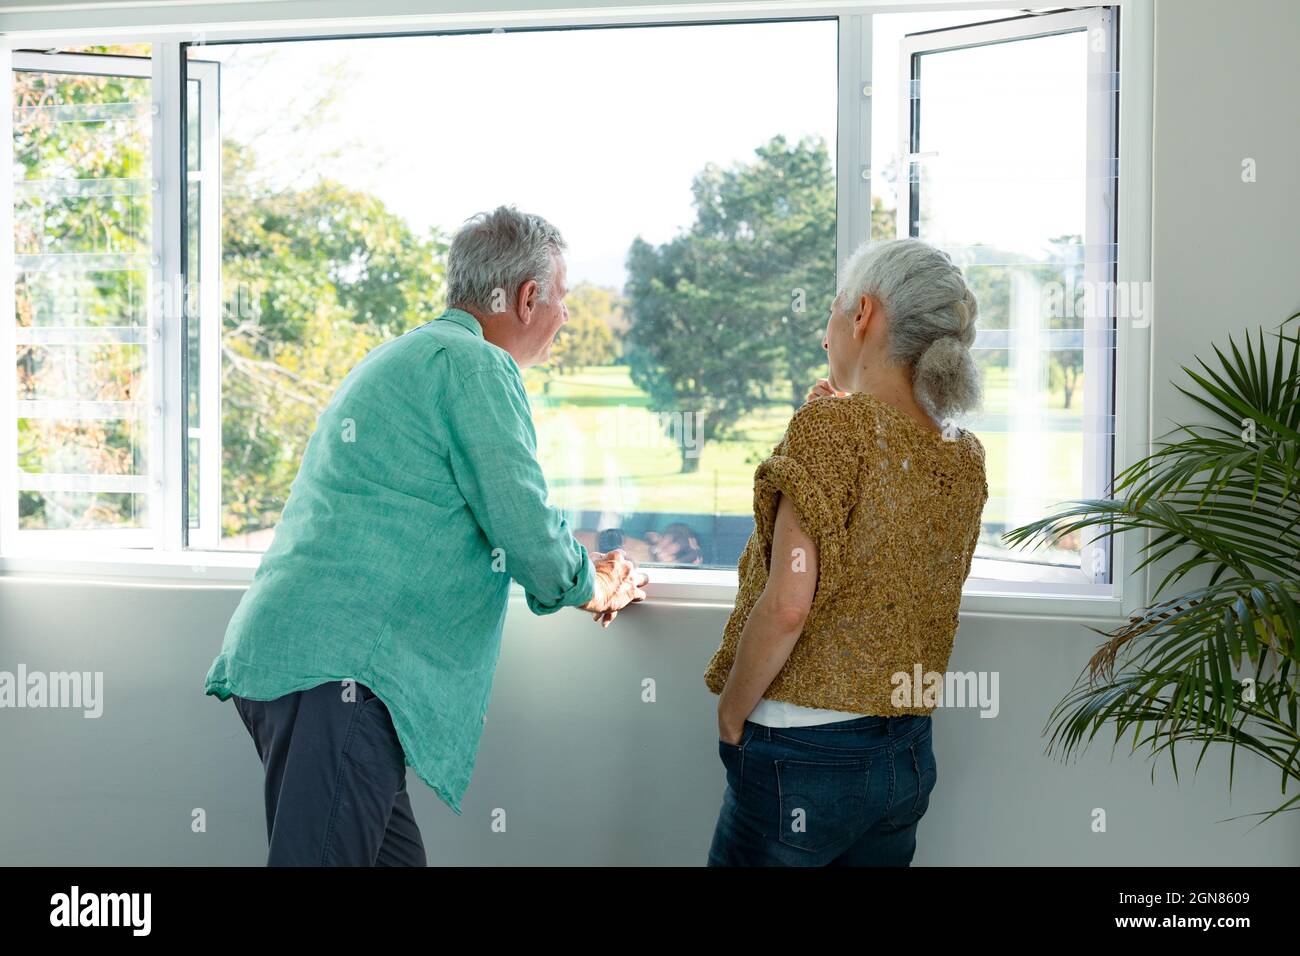 Rückansicht des kaukasischen älteren Ehepaares, das am Fenster stand und redete Stockfoto